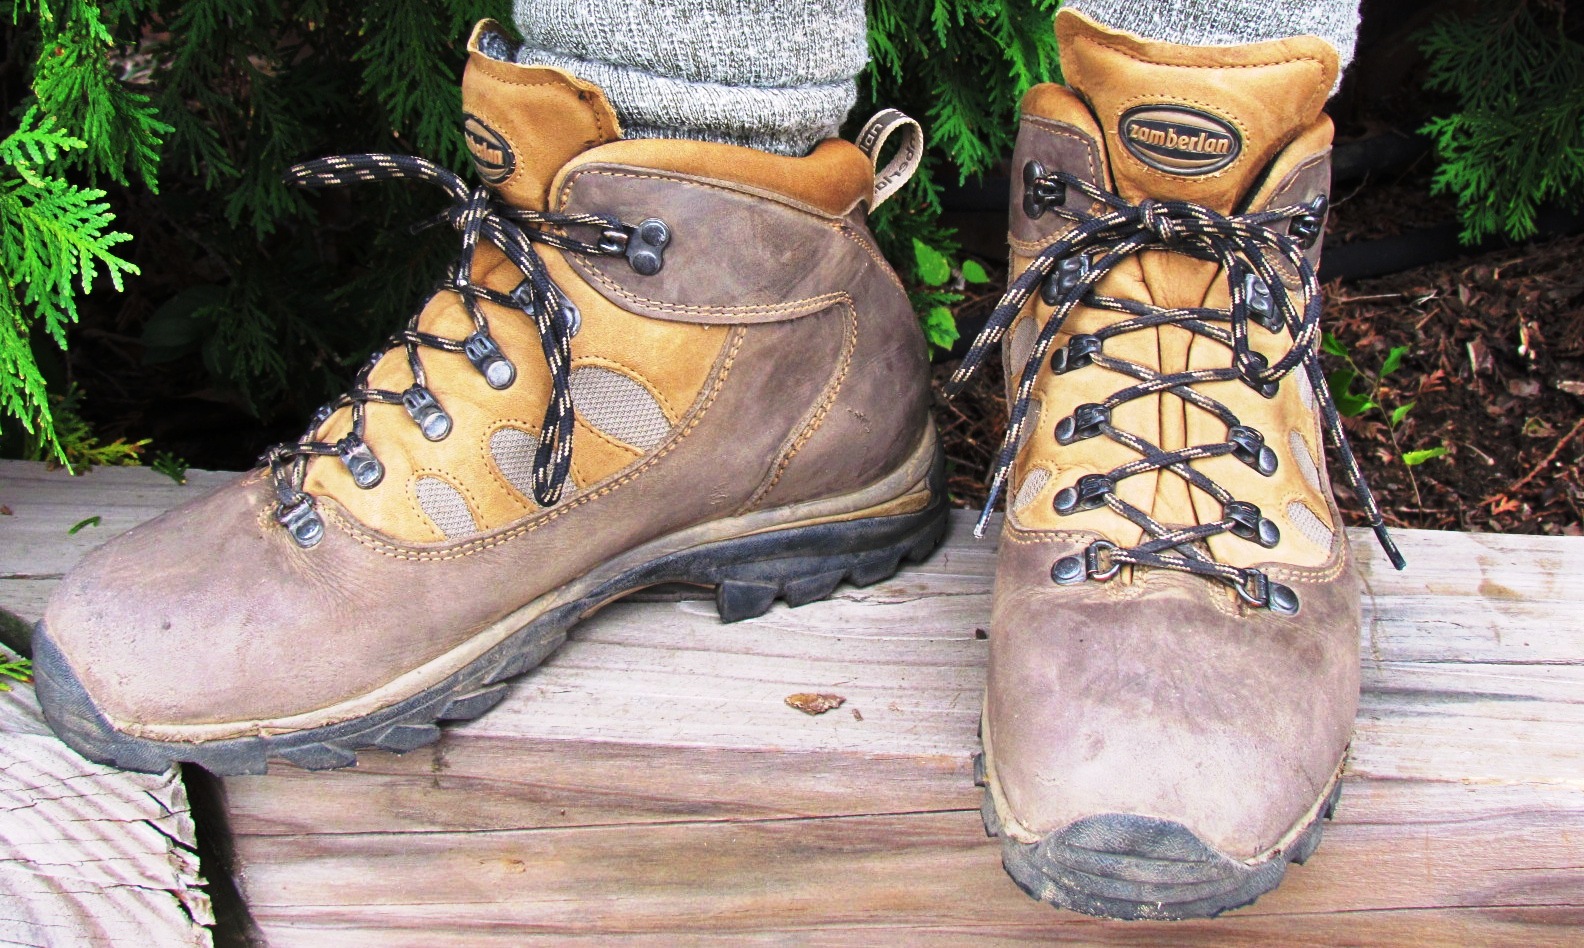 zamberlan hiking boots